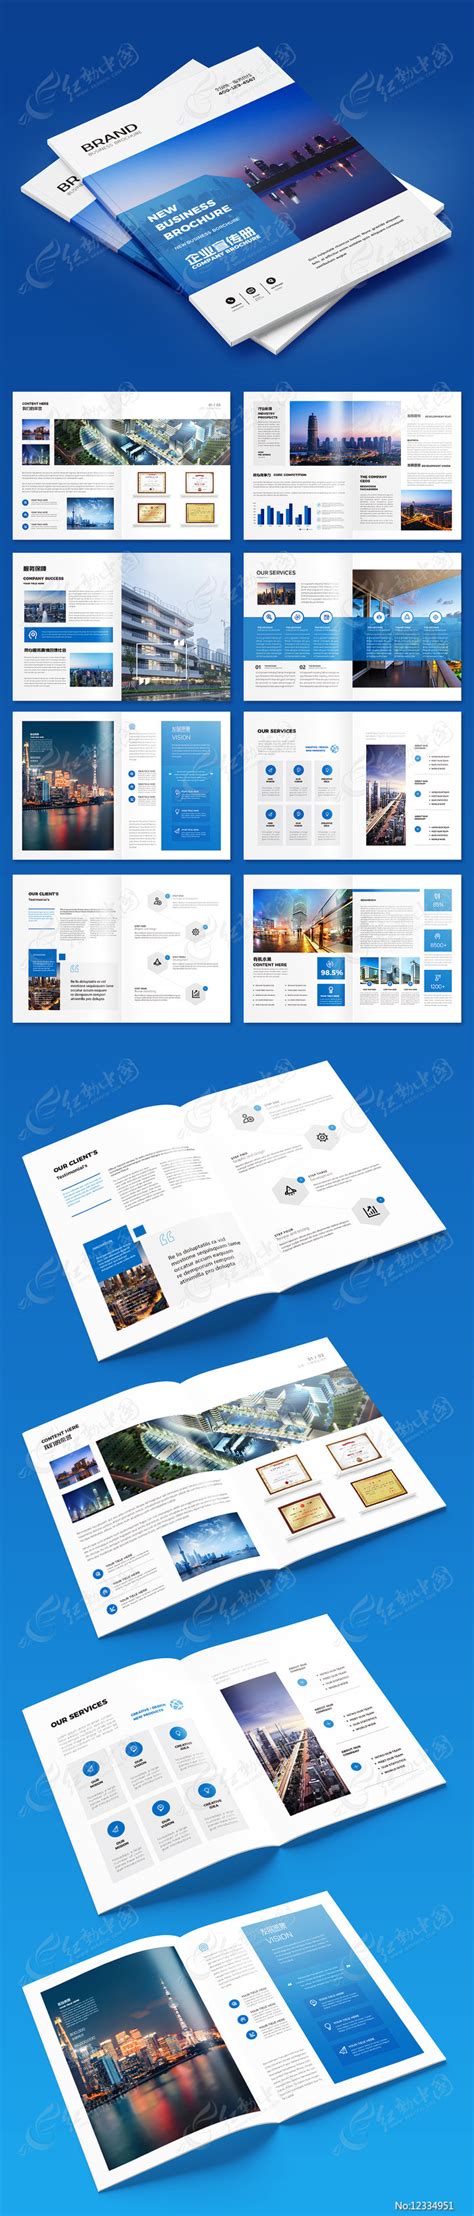 企业宣传手册素材-企业宣传手册模板-企业宣传手册图片免费下载-设图网